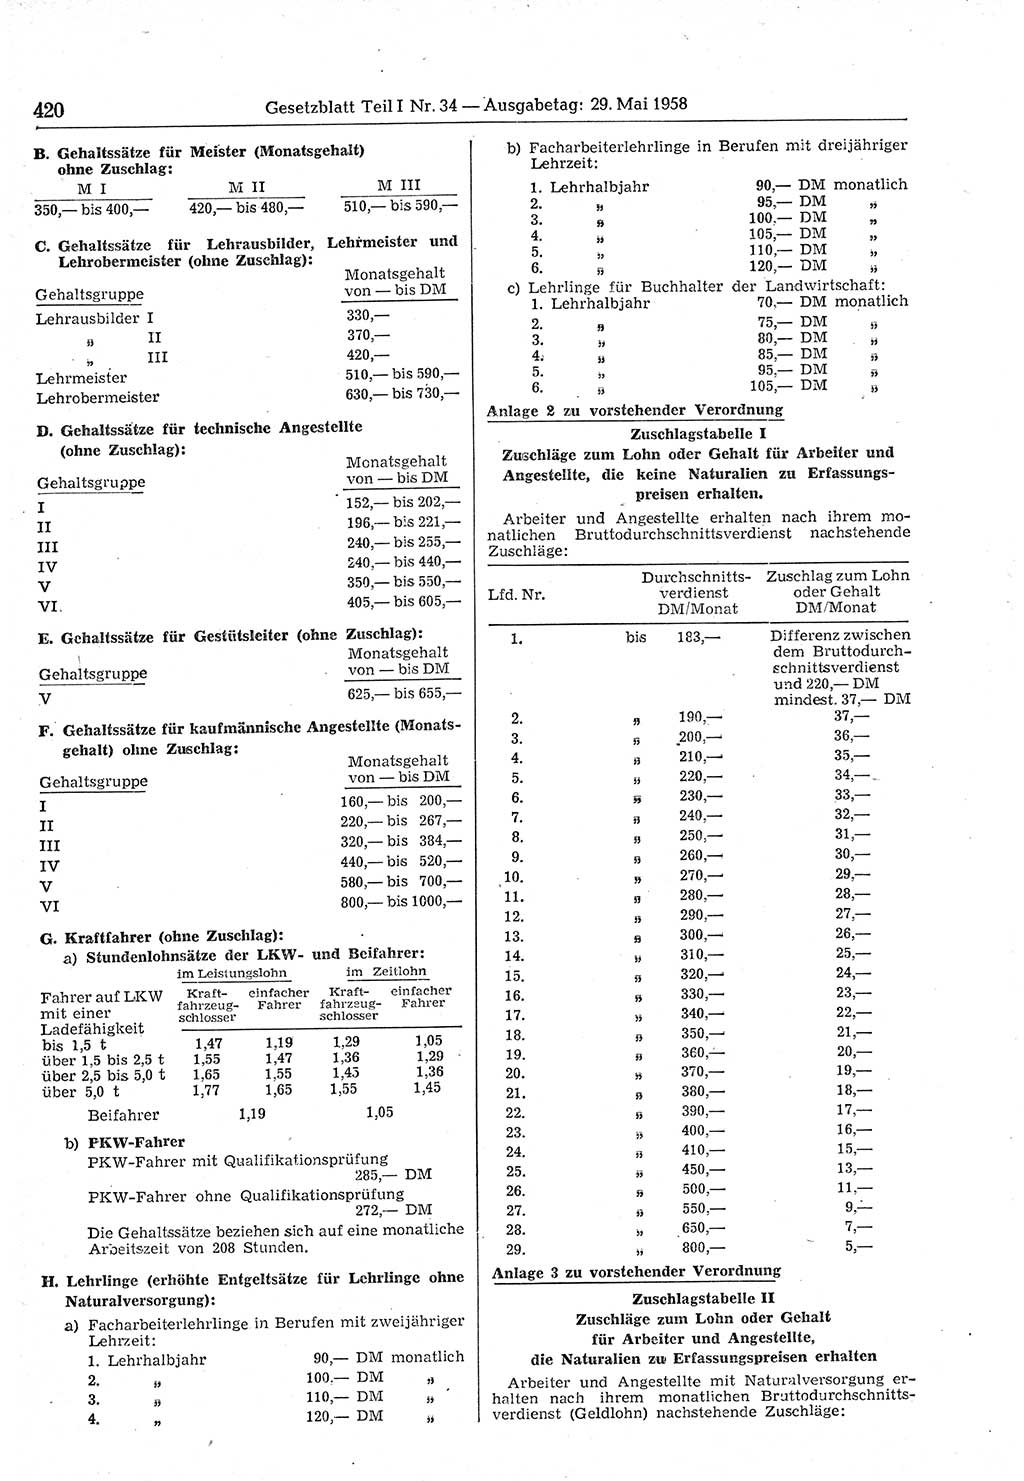 Gesetzblatt (GBl.) der Deutschen Demokratischen Republik (DDR) Teil Ⅰ 1958, Seite 420 (GBl. DDR Ⅰ 1958, S. 420)